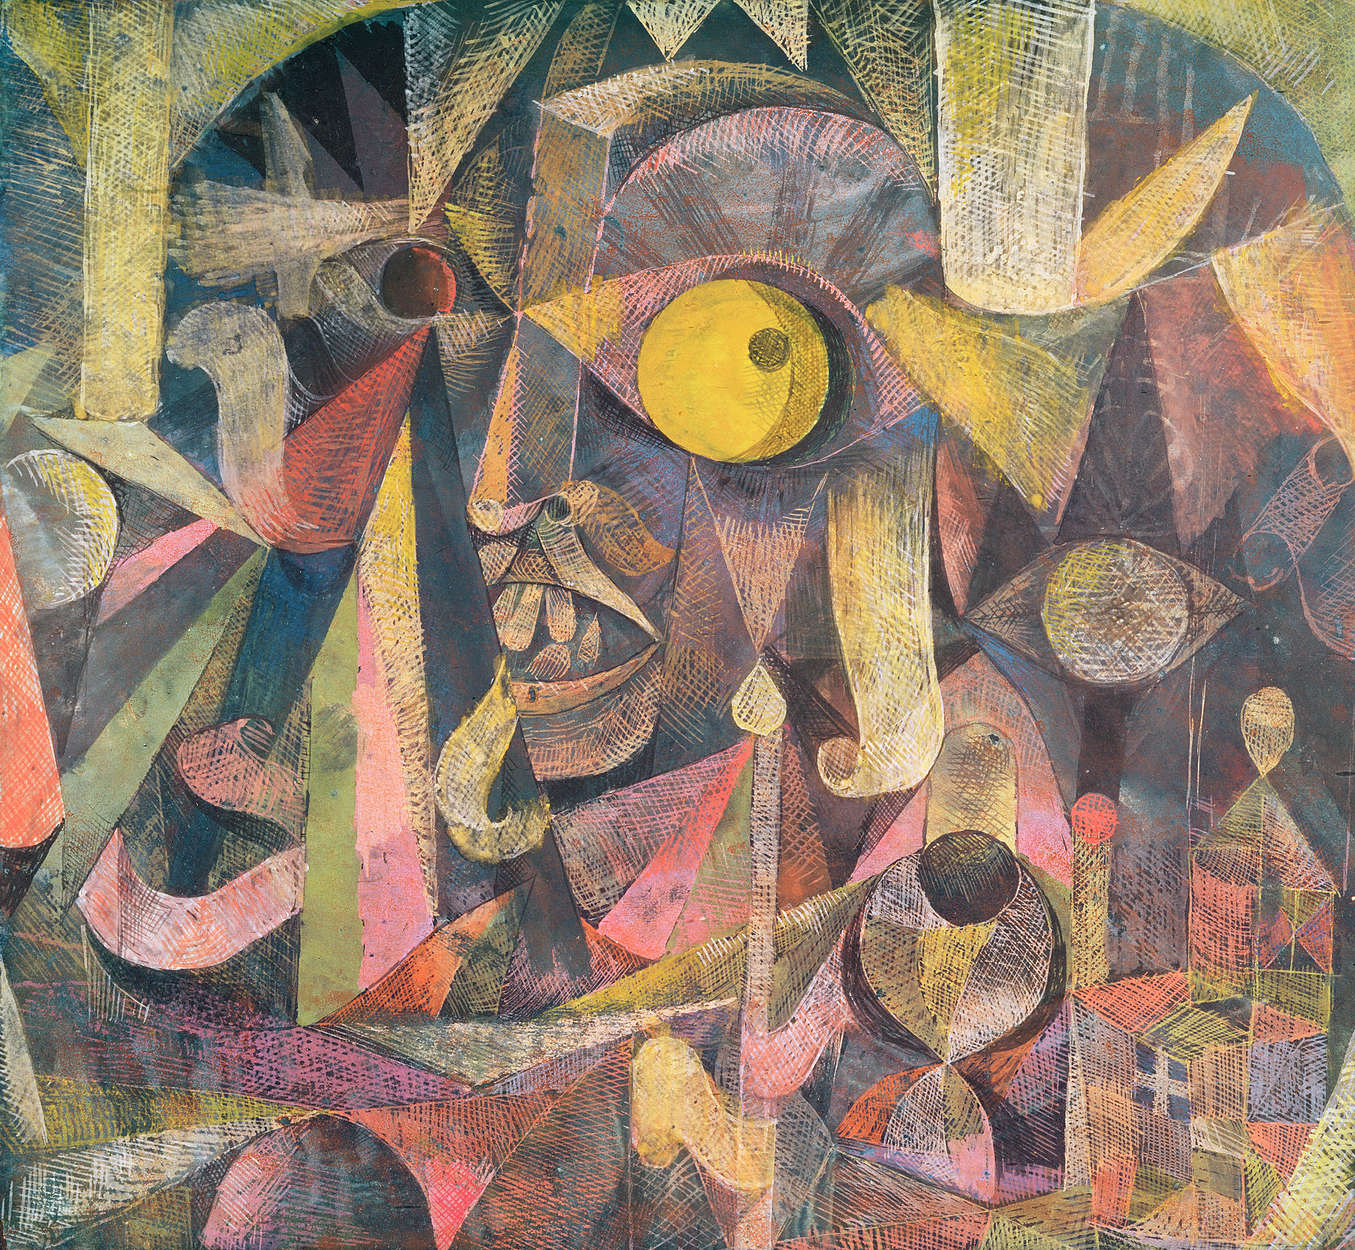             Muurschildering "La Lune Etait sur le Declin" van Paul Klee
        